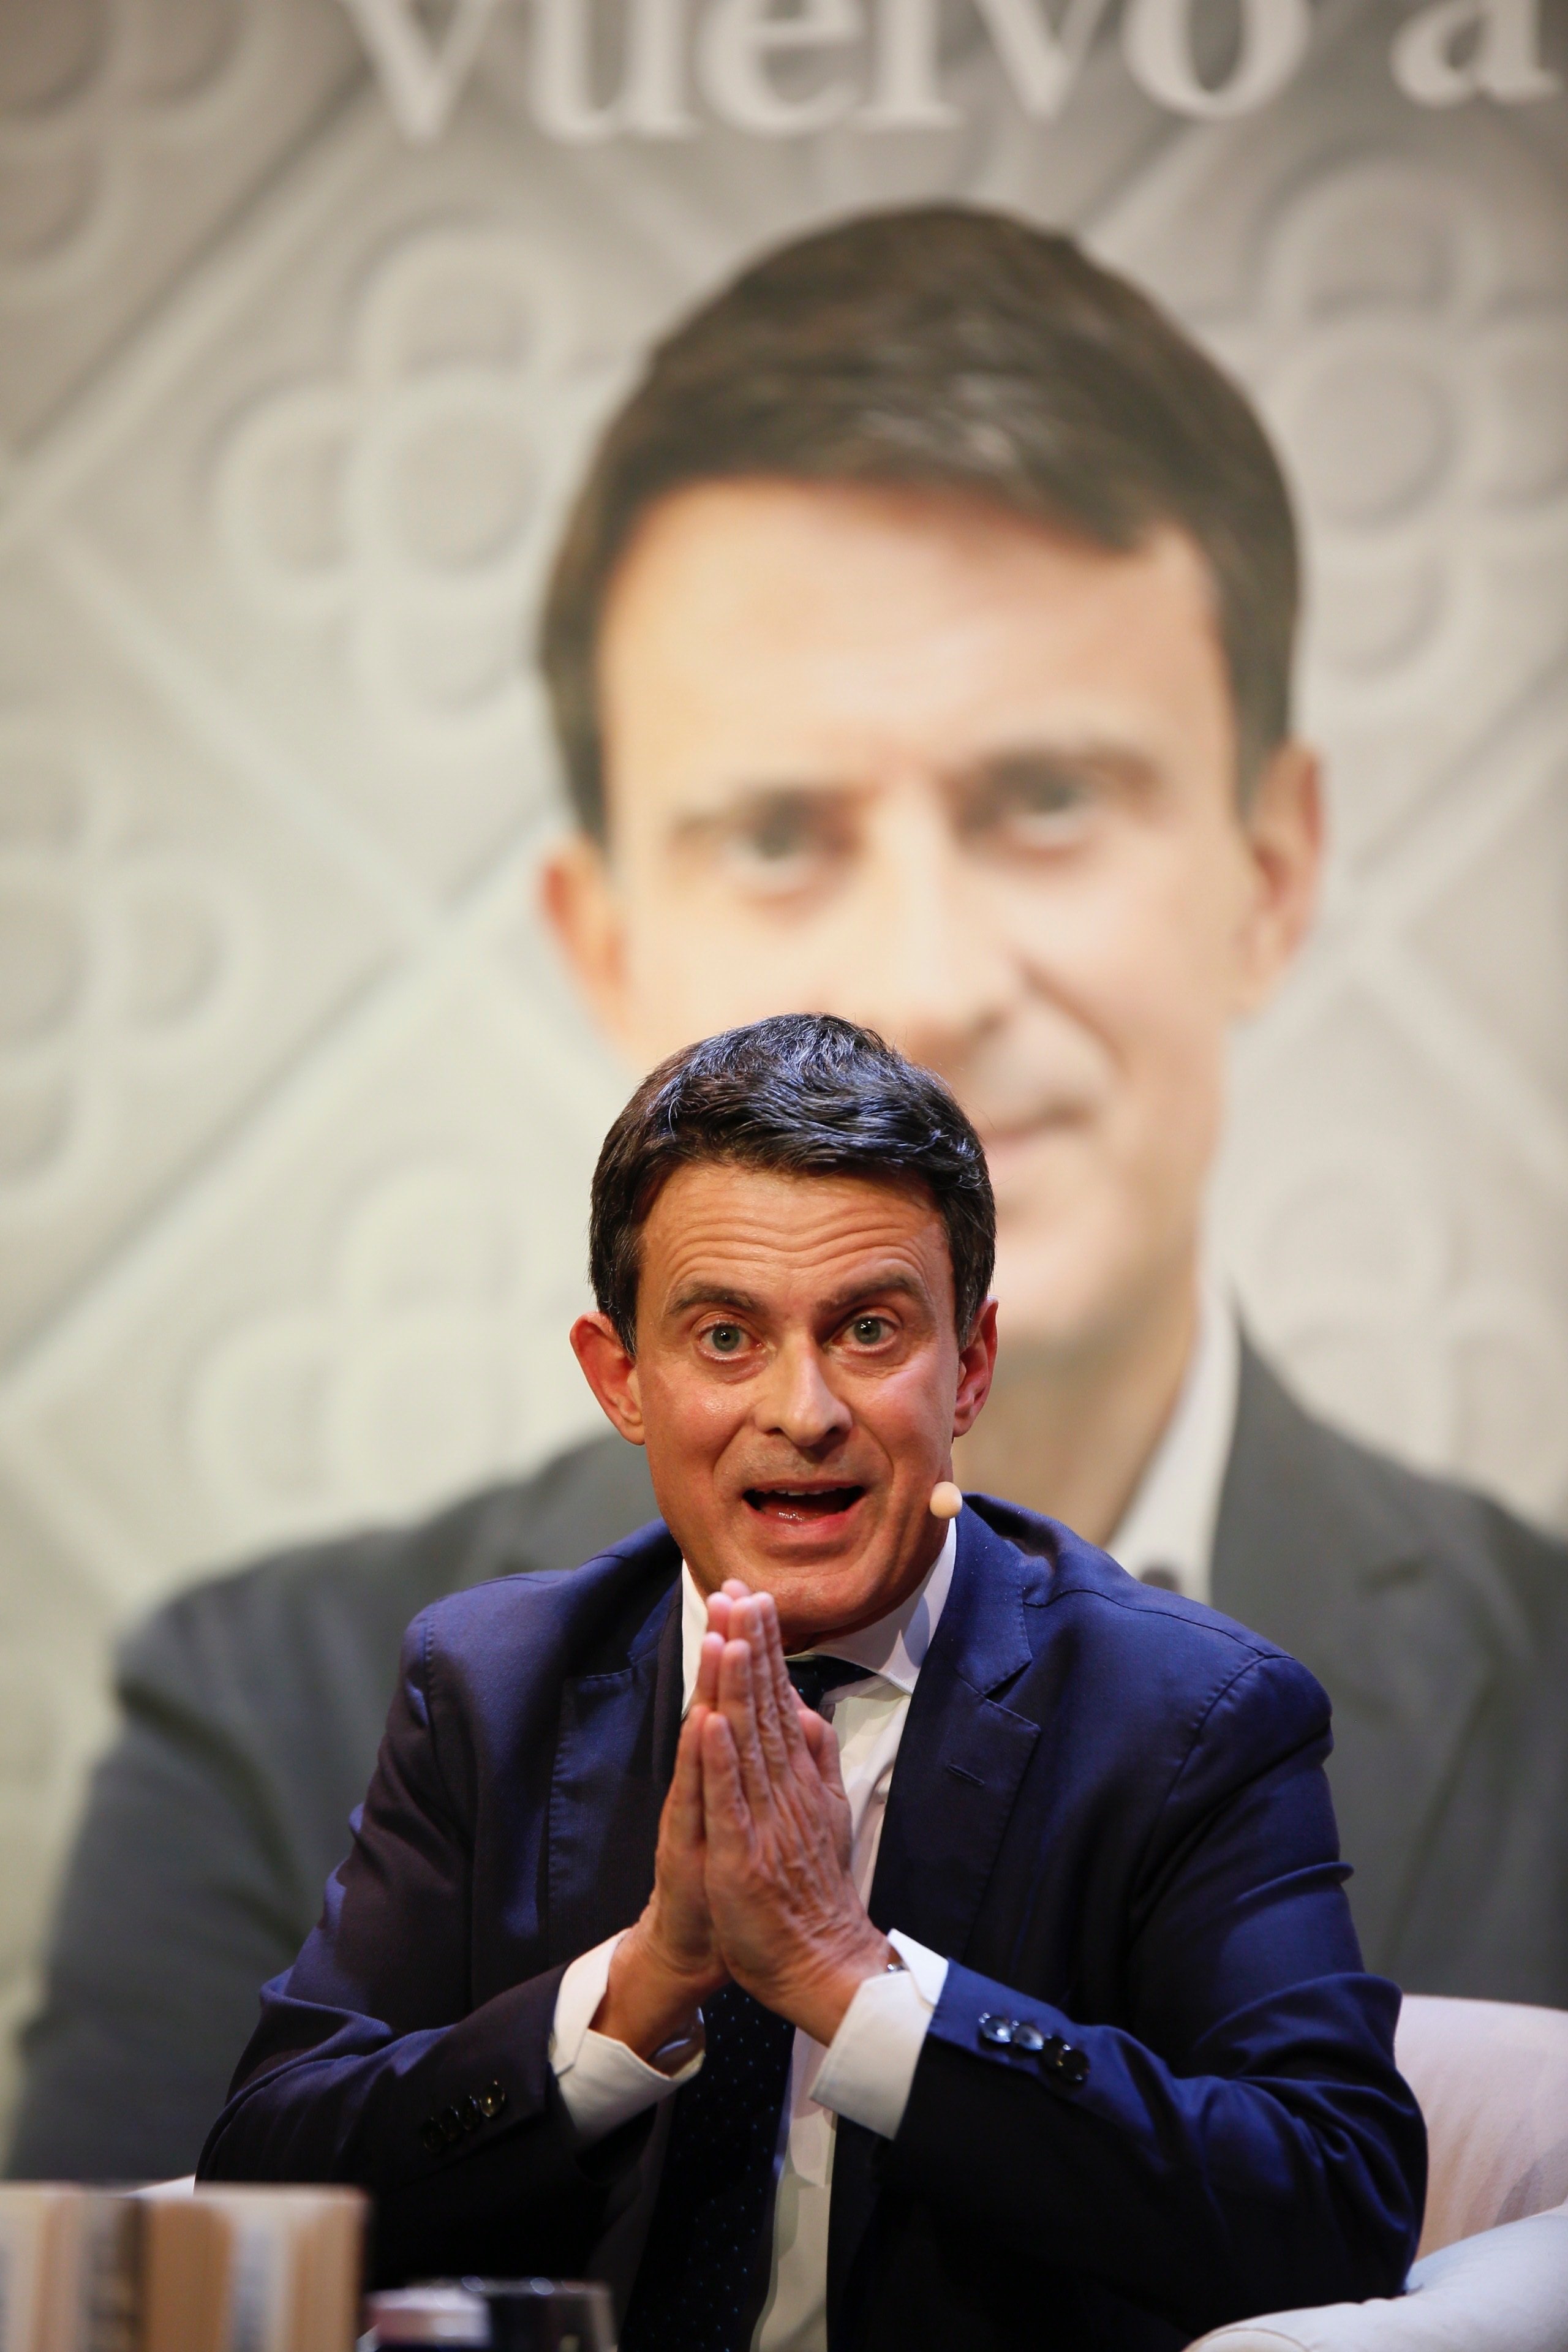 Ridículo de Manuel Valls: le preguntan cuánto cuesta el metro y él habla de taxis